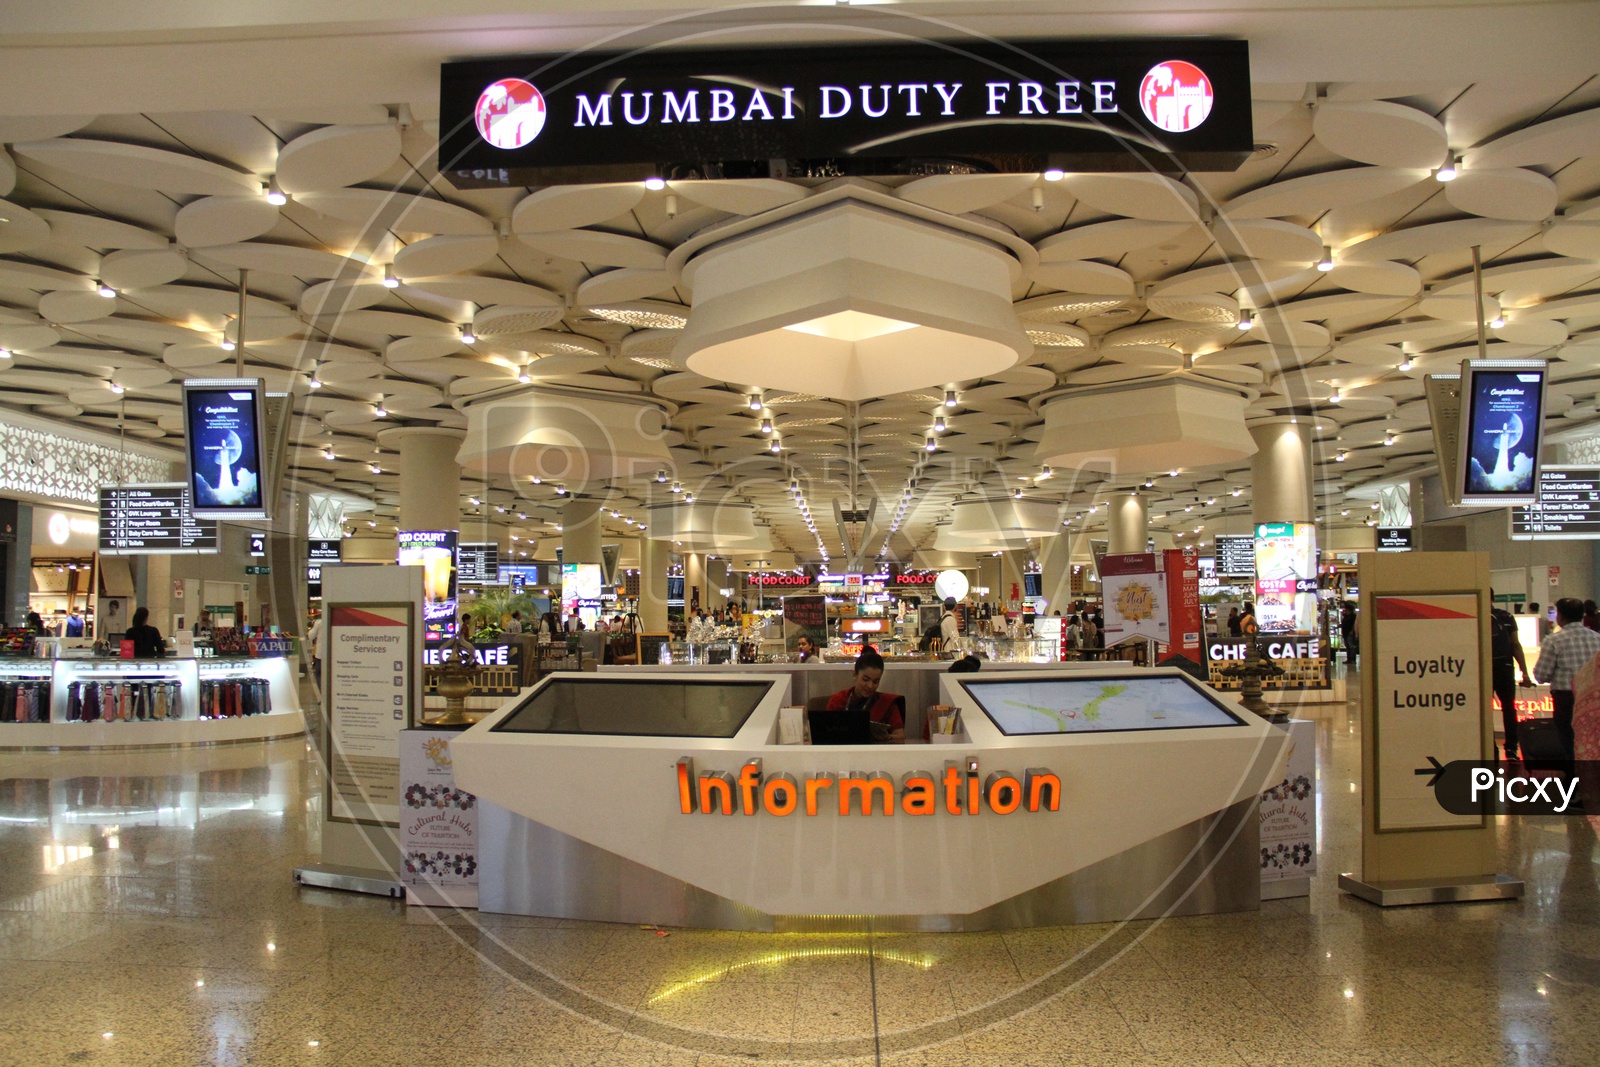 Mumbai Duty Free Shops In a mall